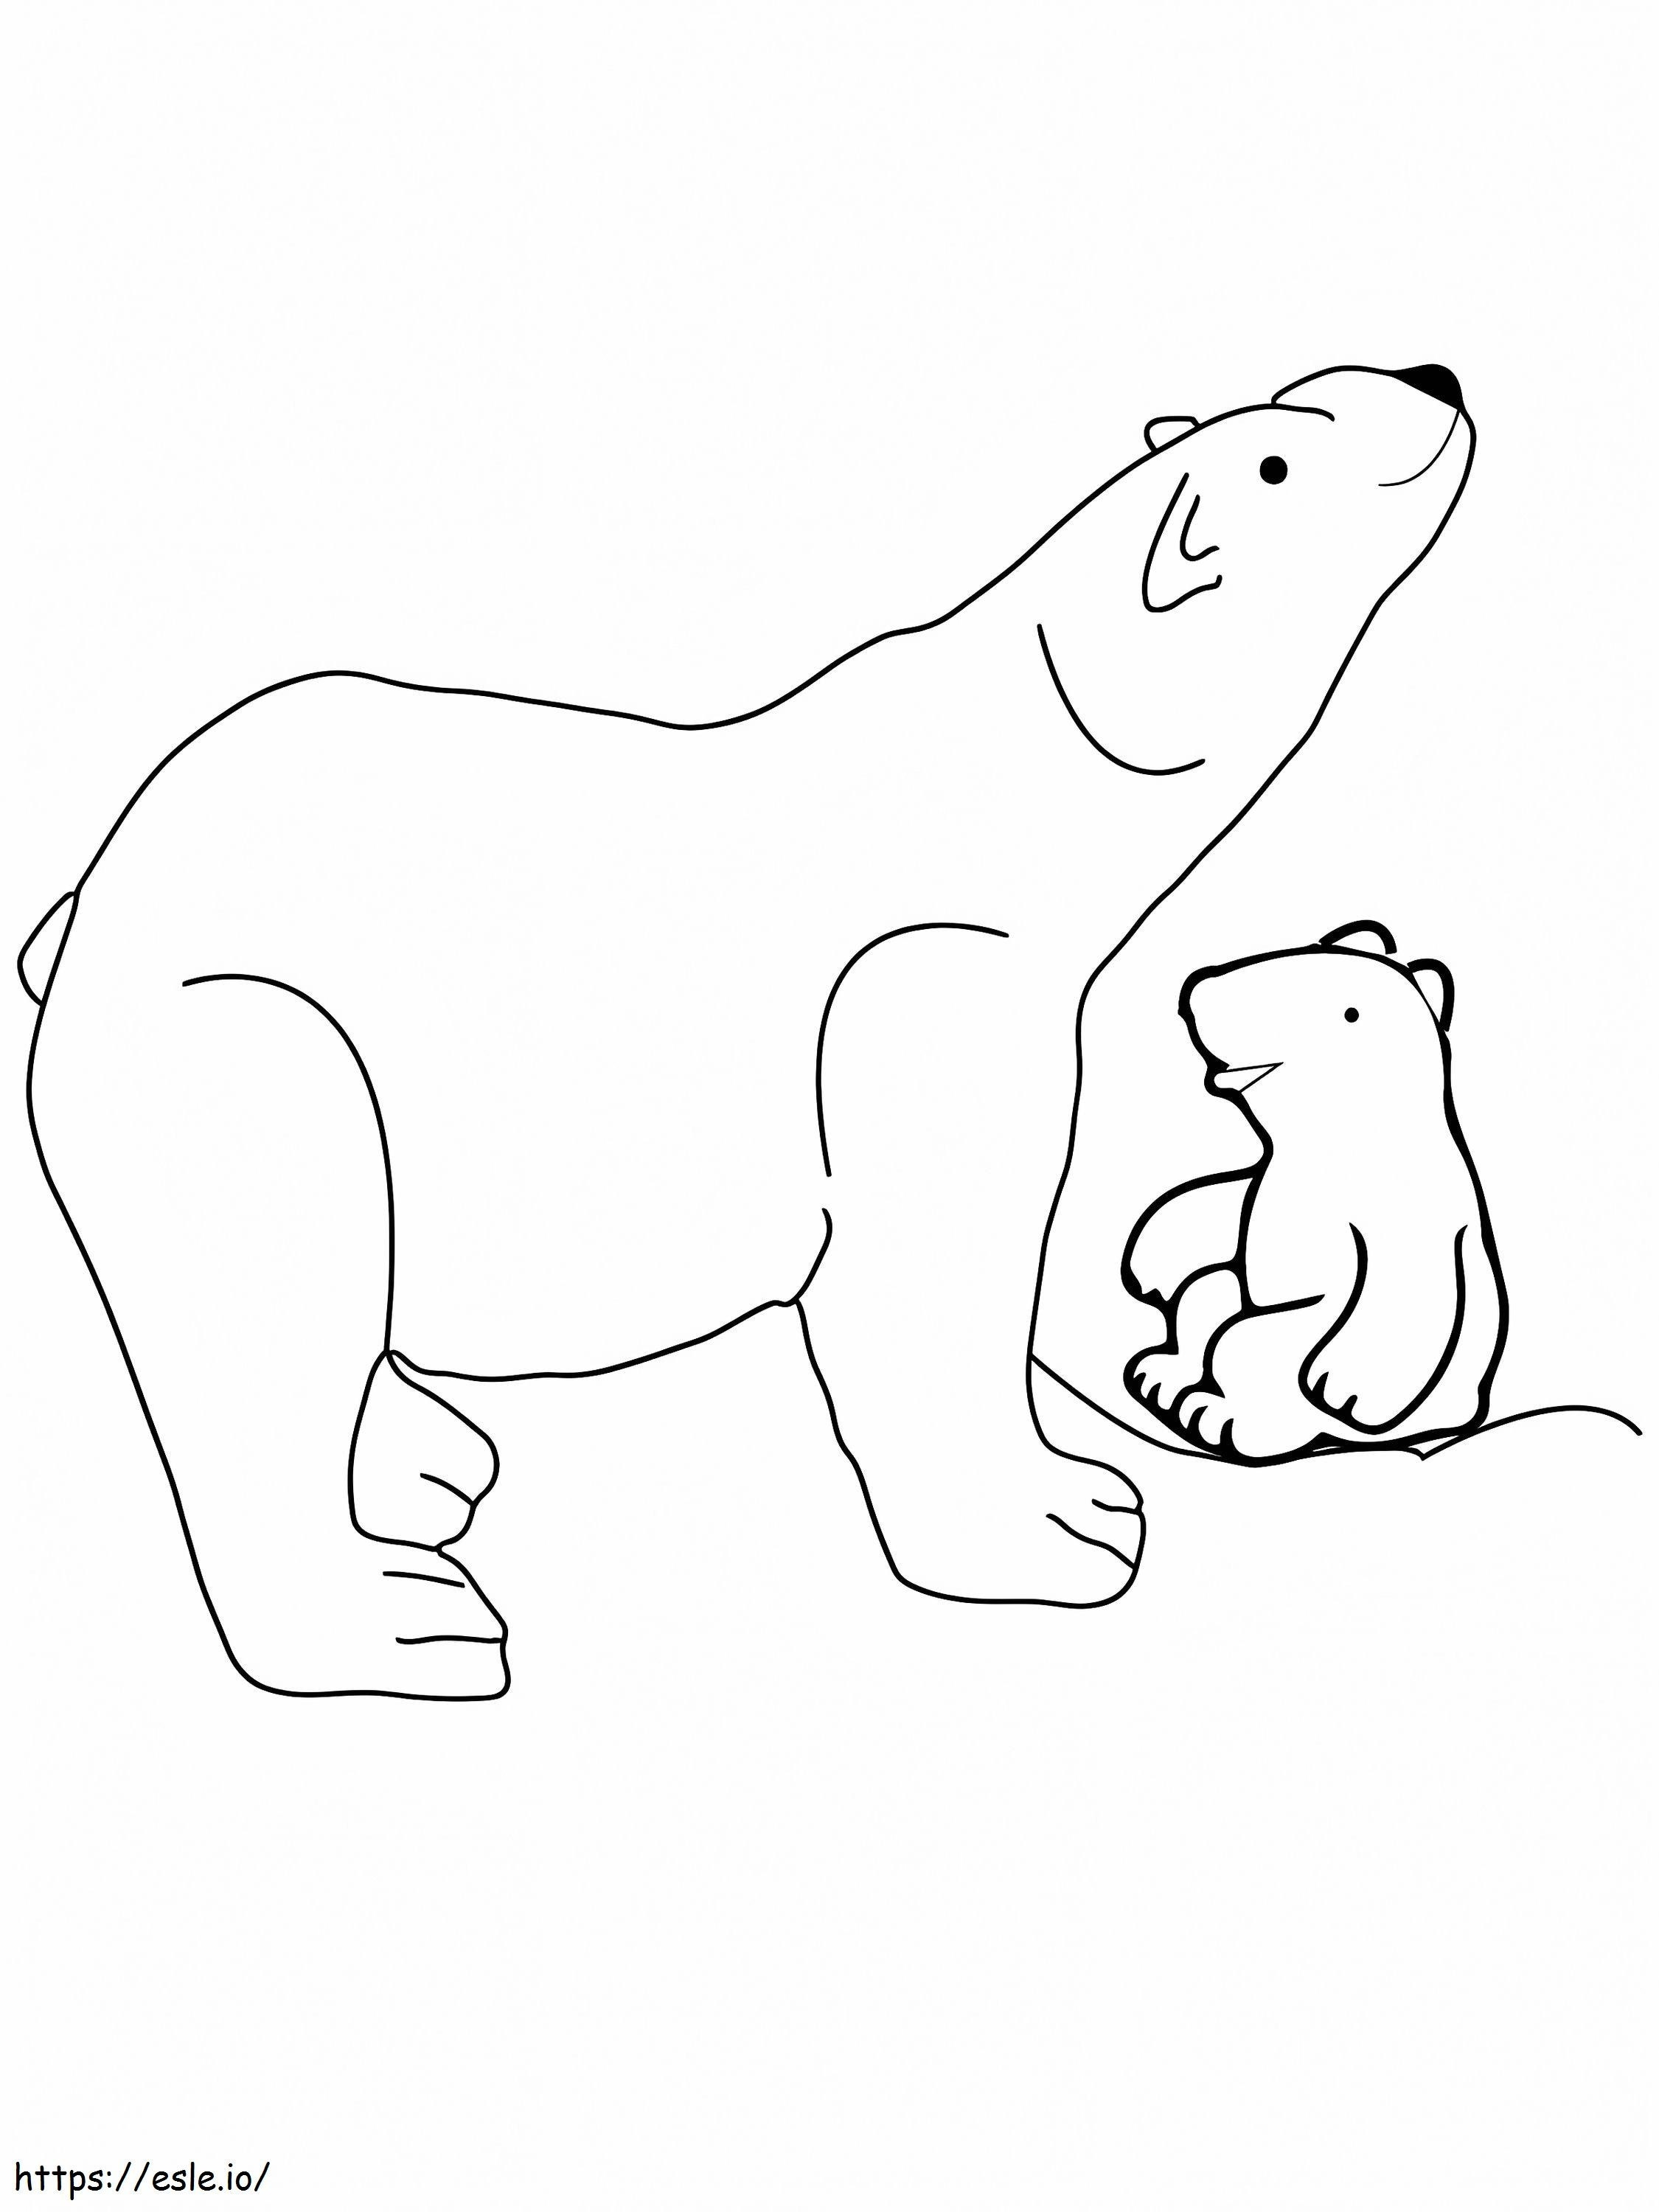 Jungtier und Bär schnüffeln arktische Tiere ausmalbilder